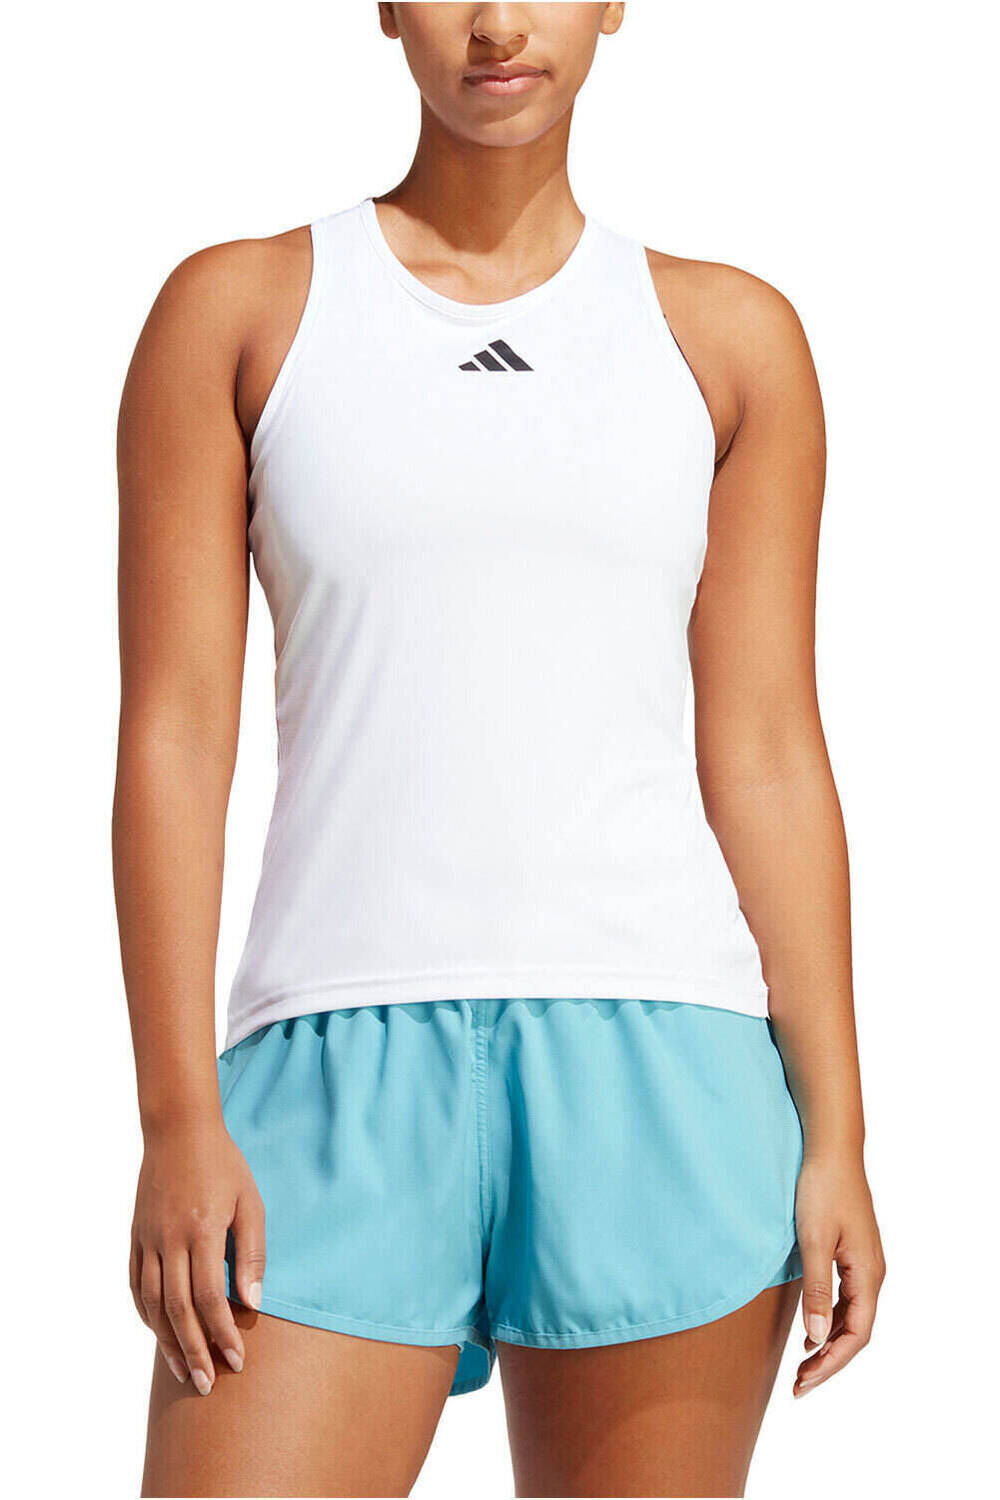 adidas camiseta tirantes mujer Club Tennis vista frontal